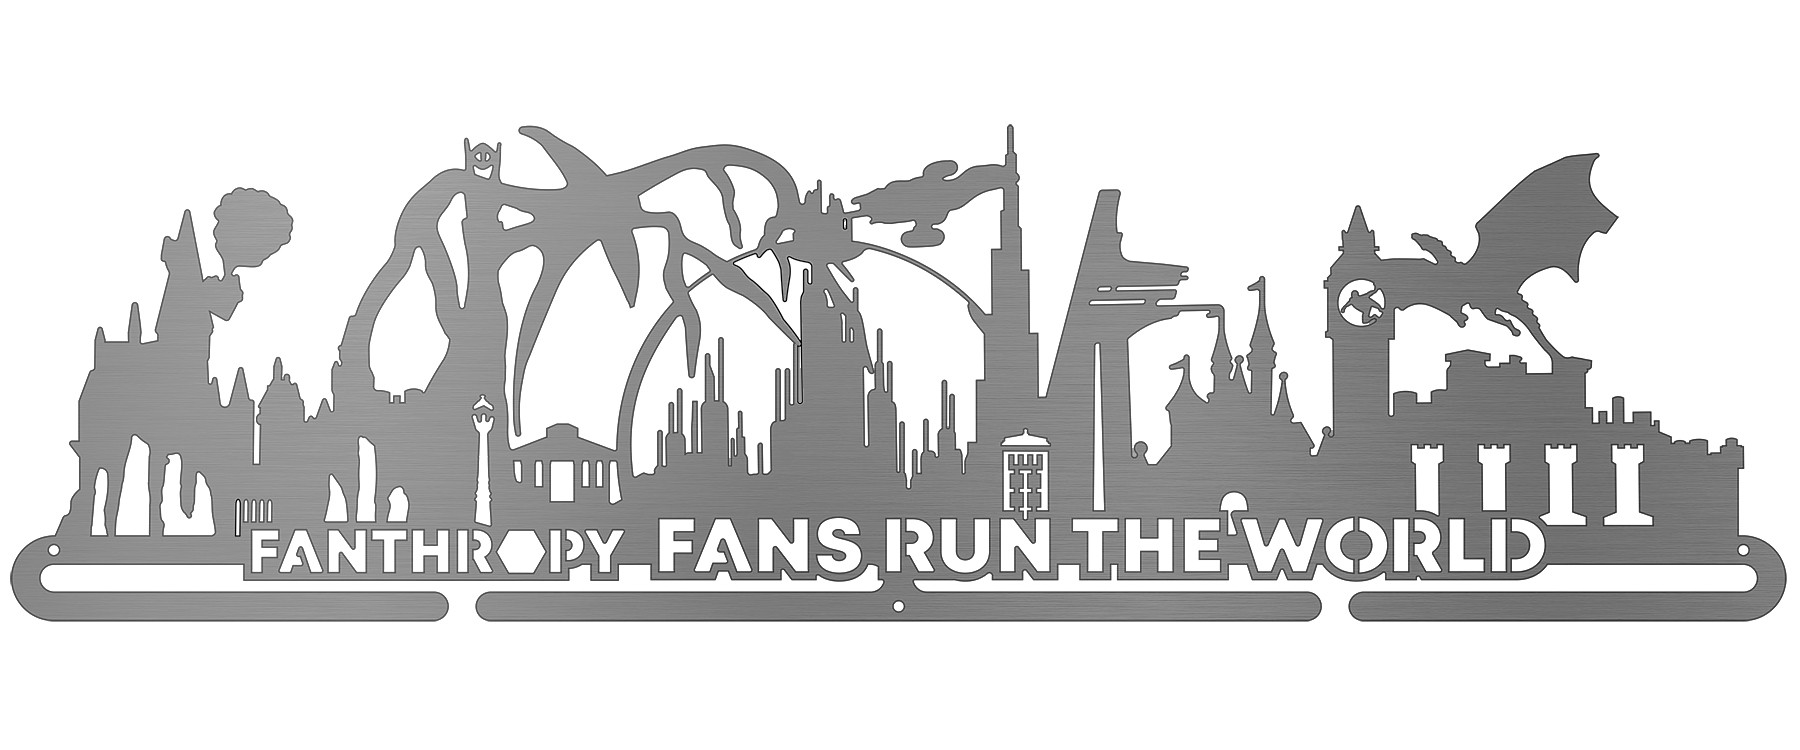 Fans Run The World - Version 2 - Fanthropy Running Clubs